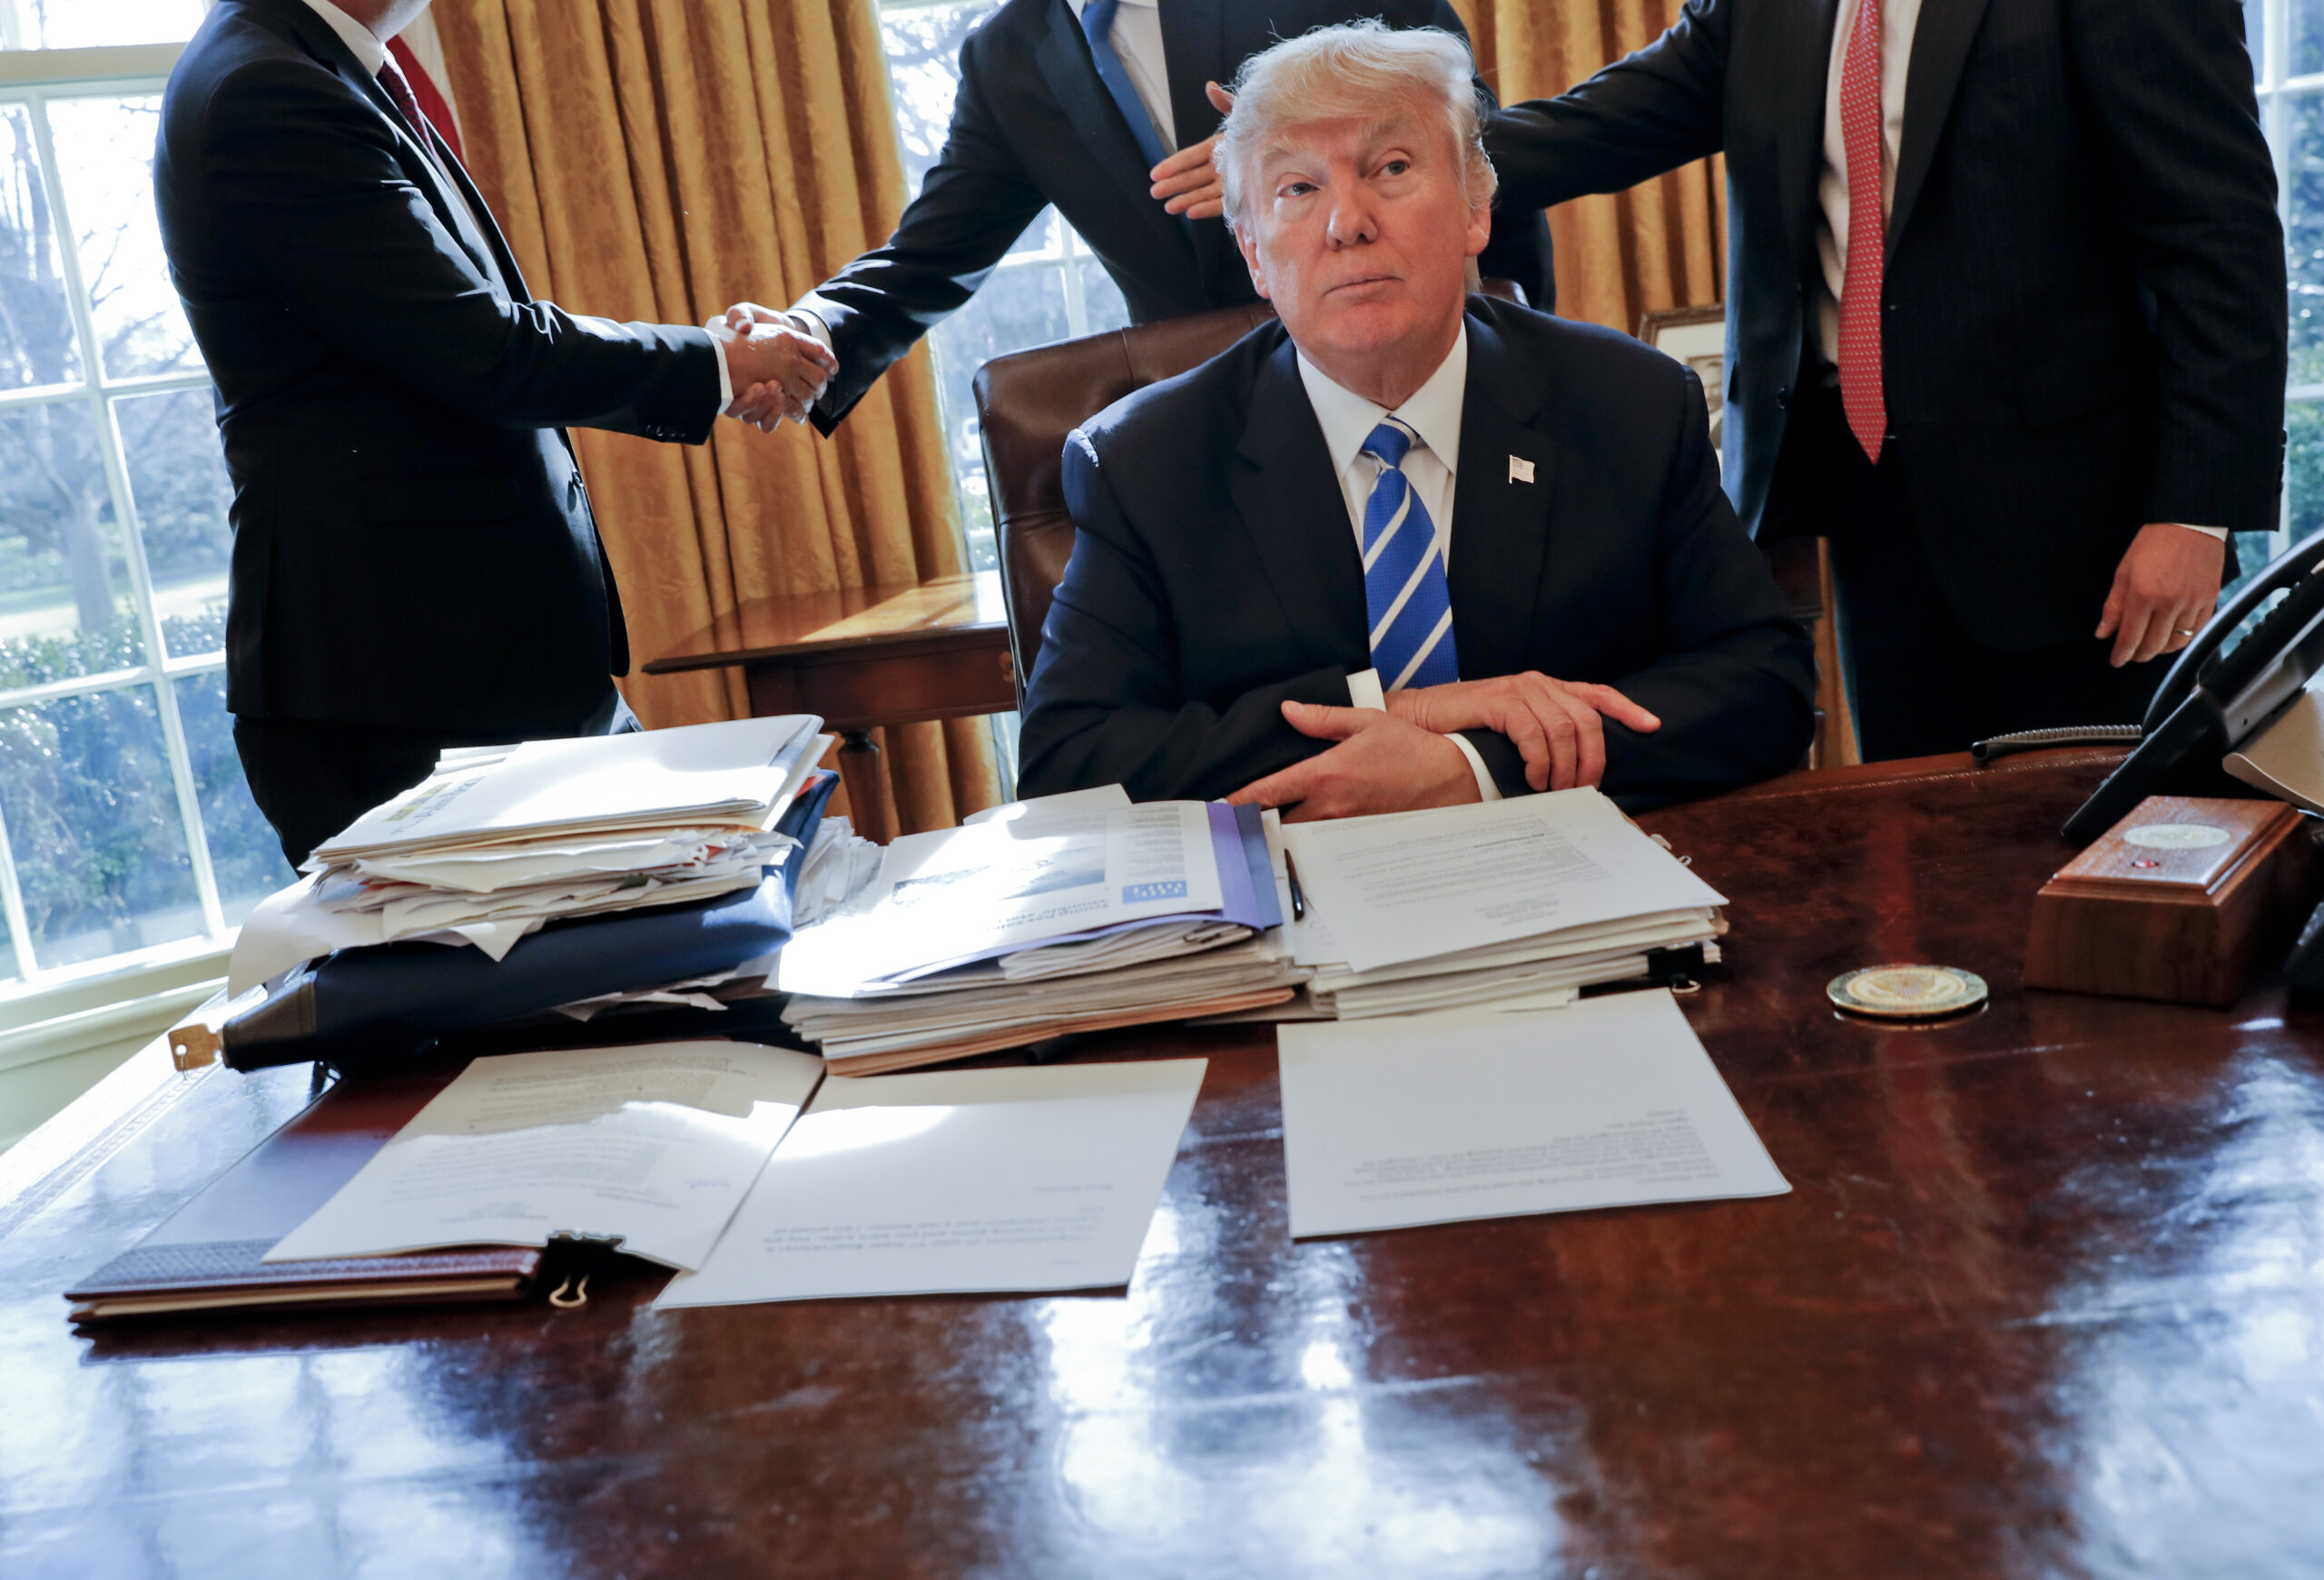 Trump denies flushing papers down White House toilet - Washington Examiner